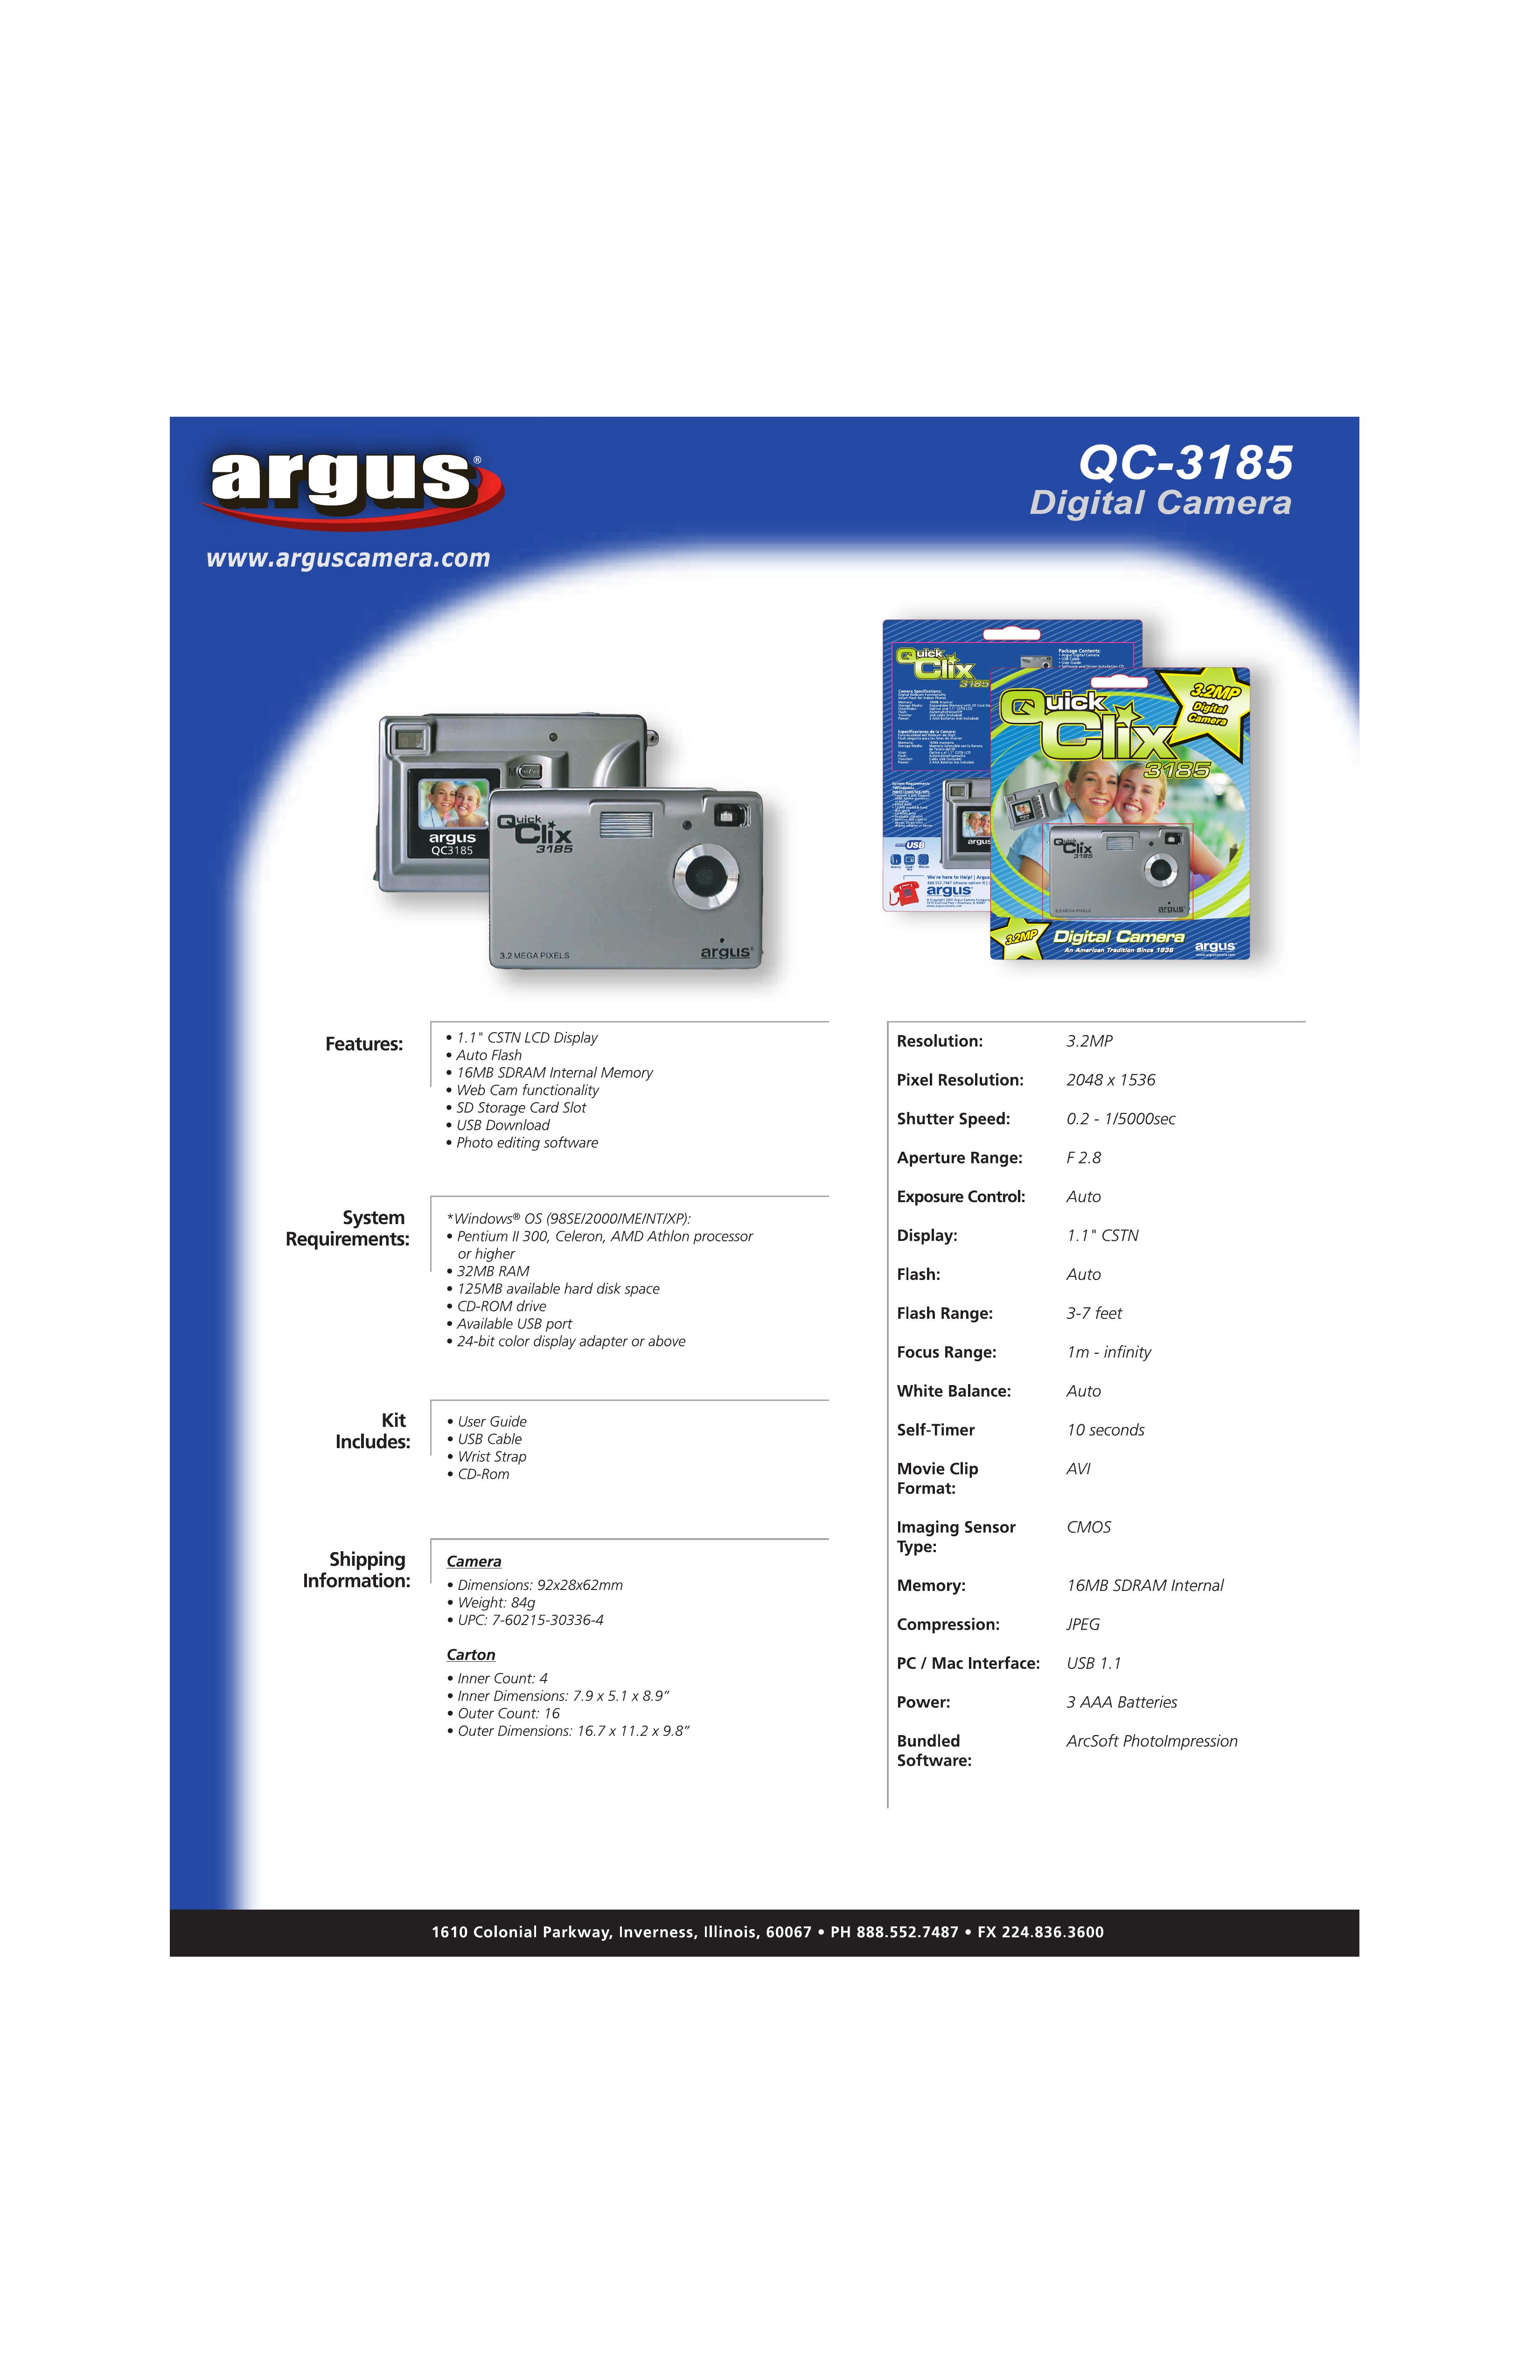 Argus Camera QC-3185 Digital Camera User Manual